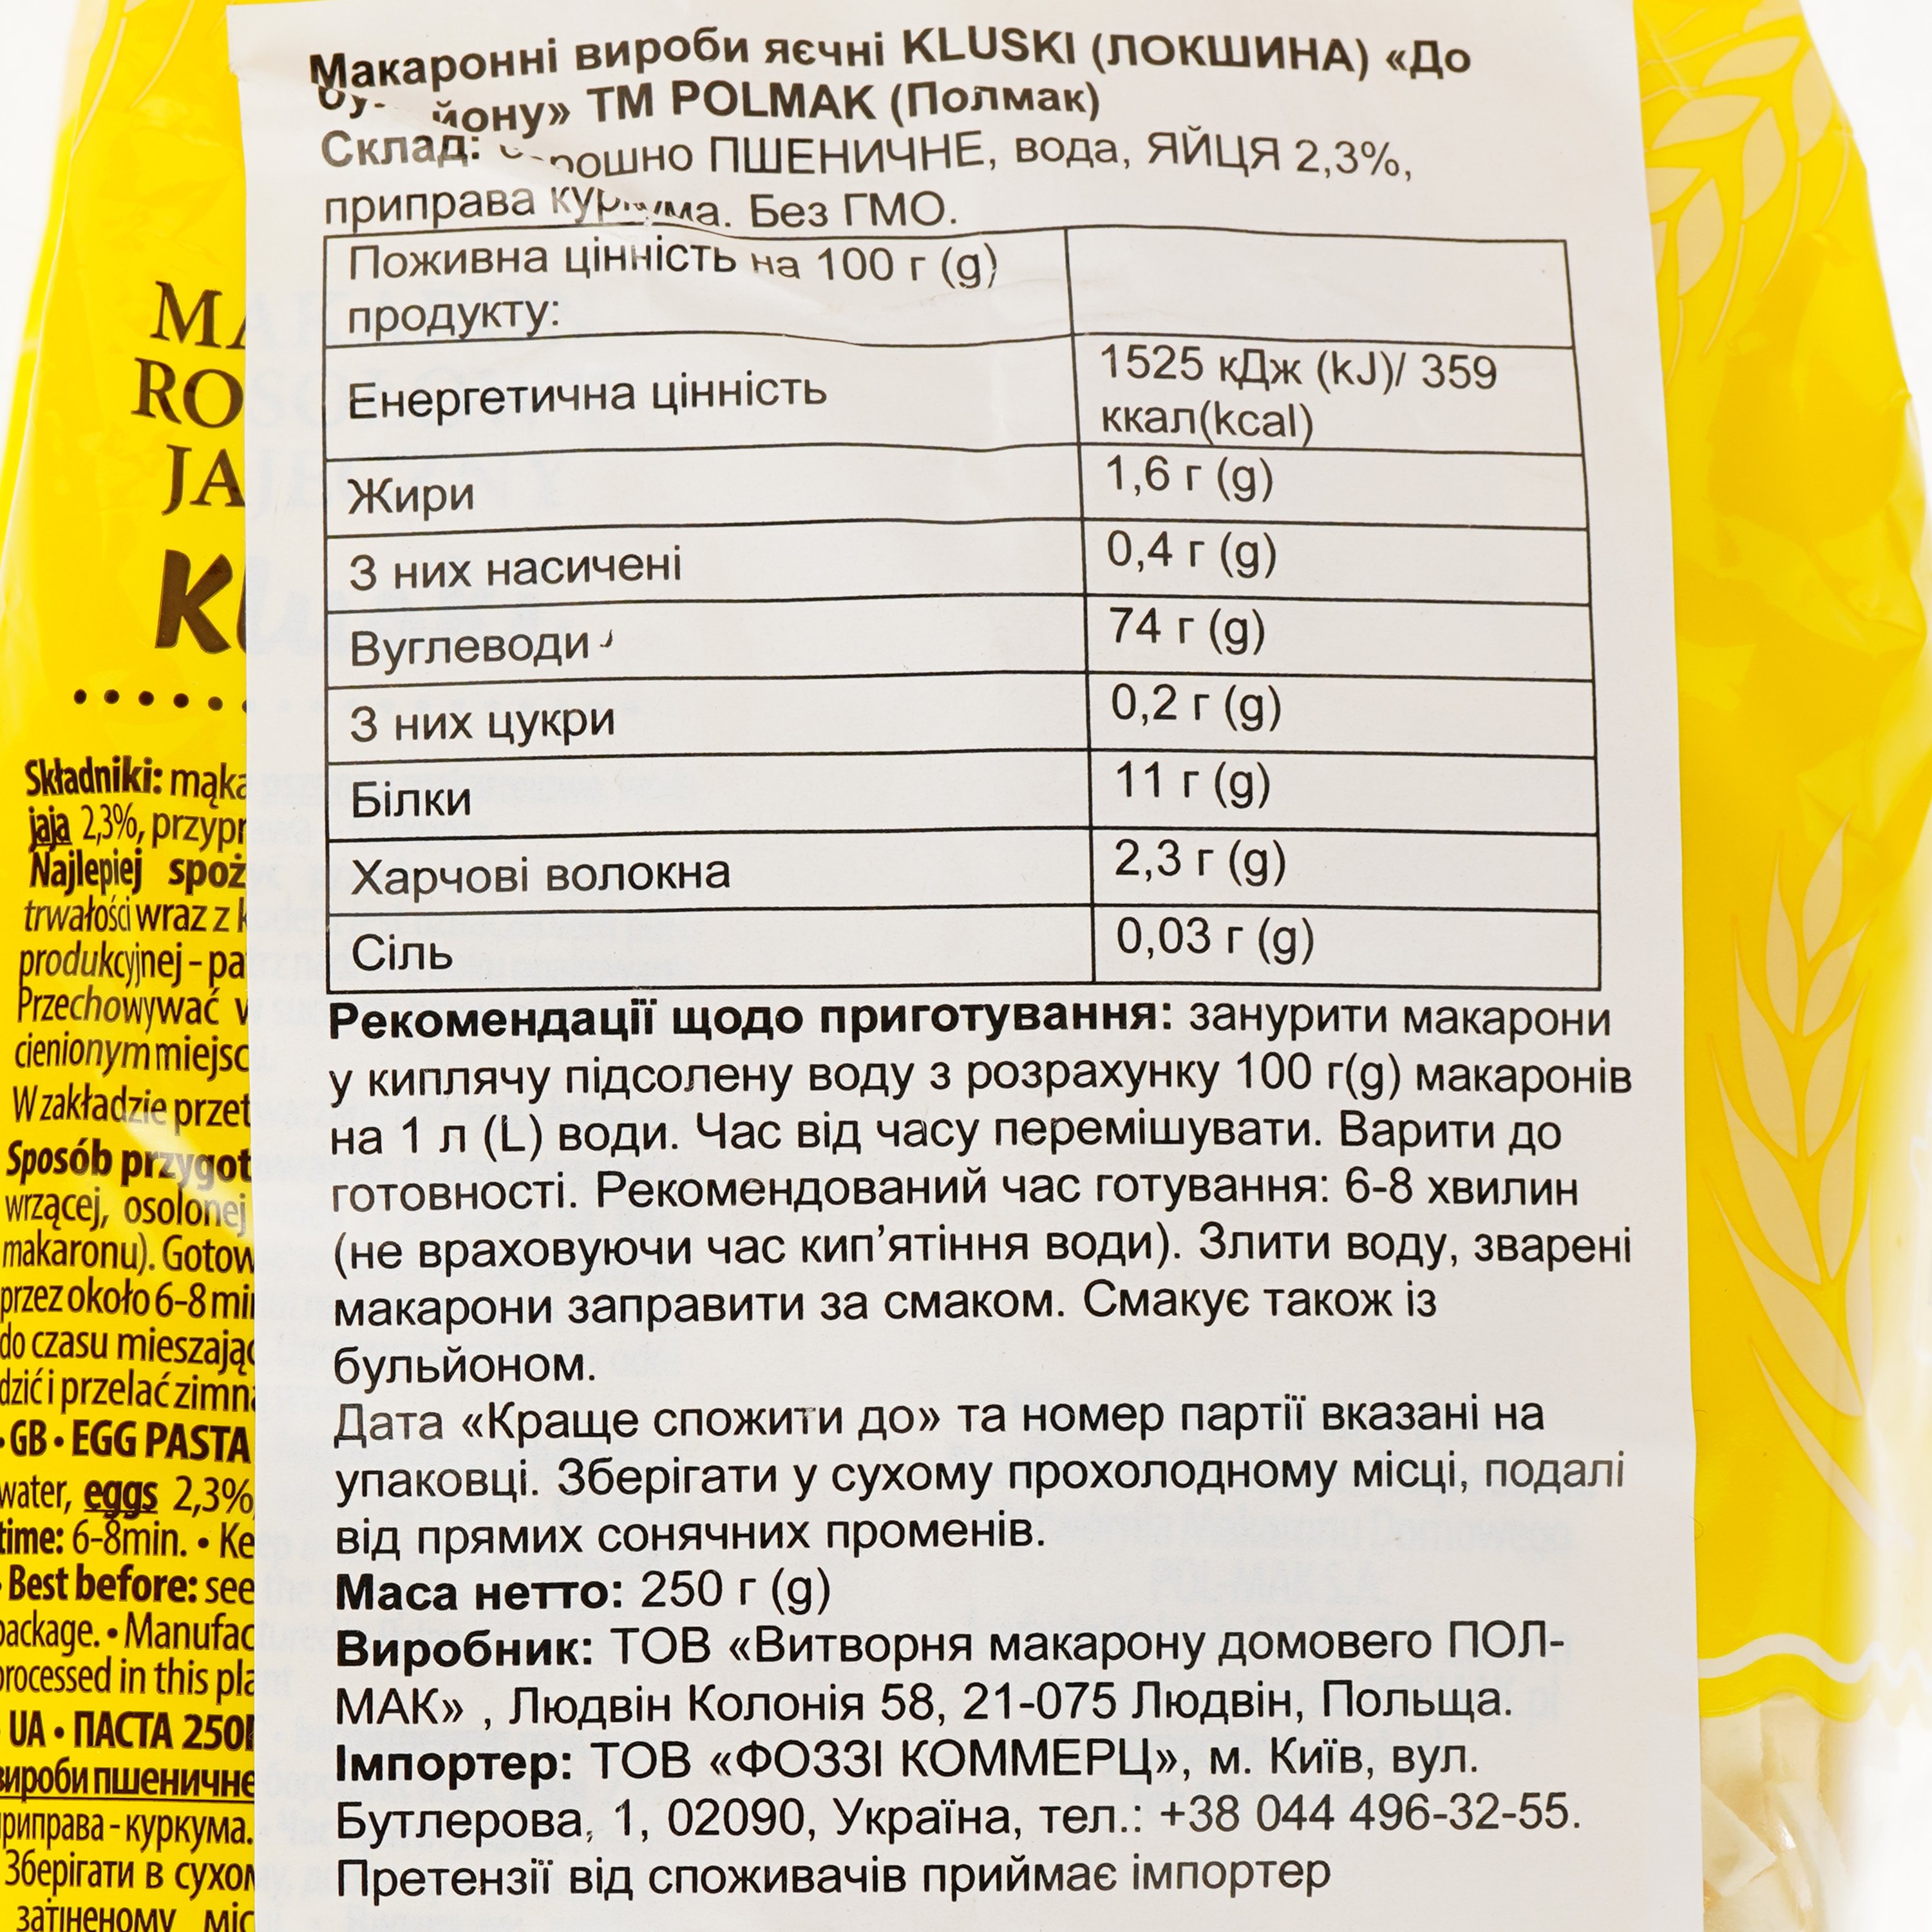 Изделия макаронные Polmak Kluski К бульону, яичные, 250 г (920054) - фото 4